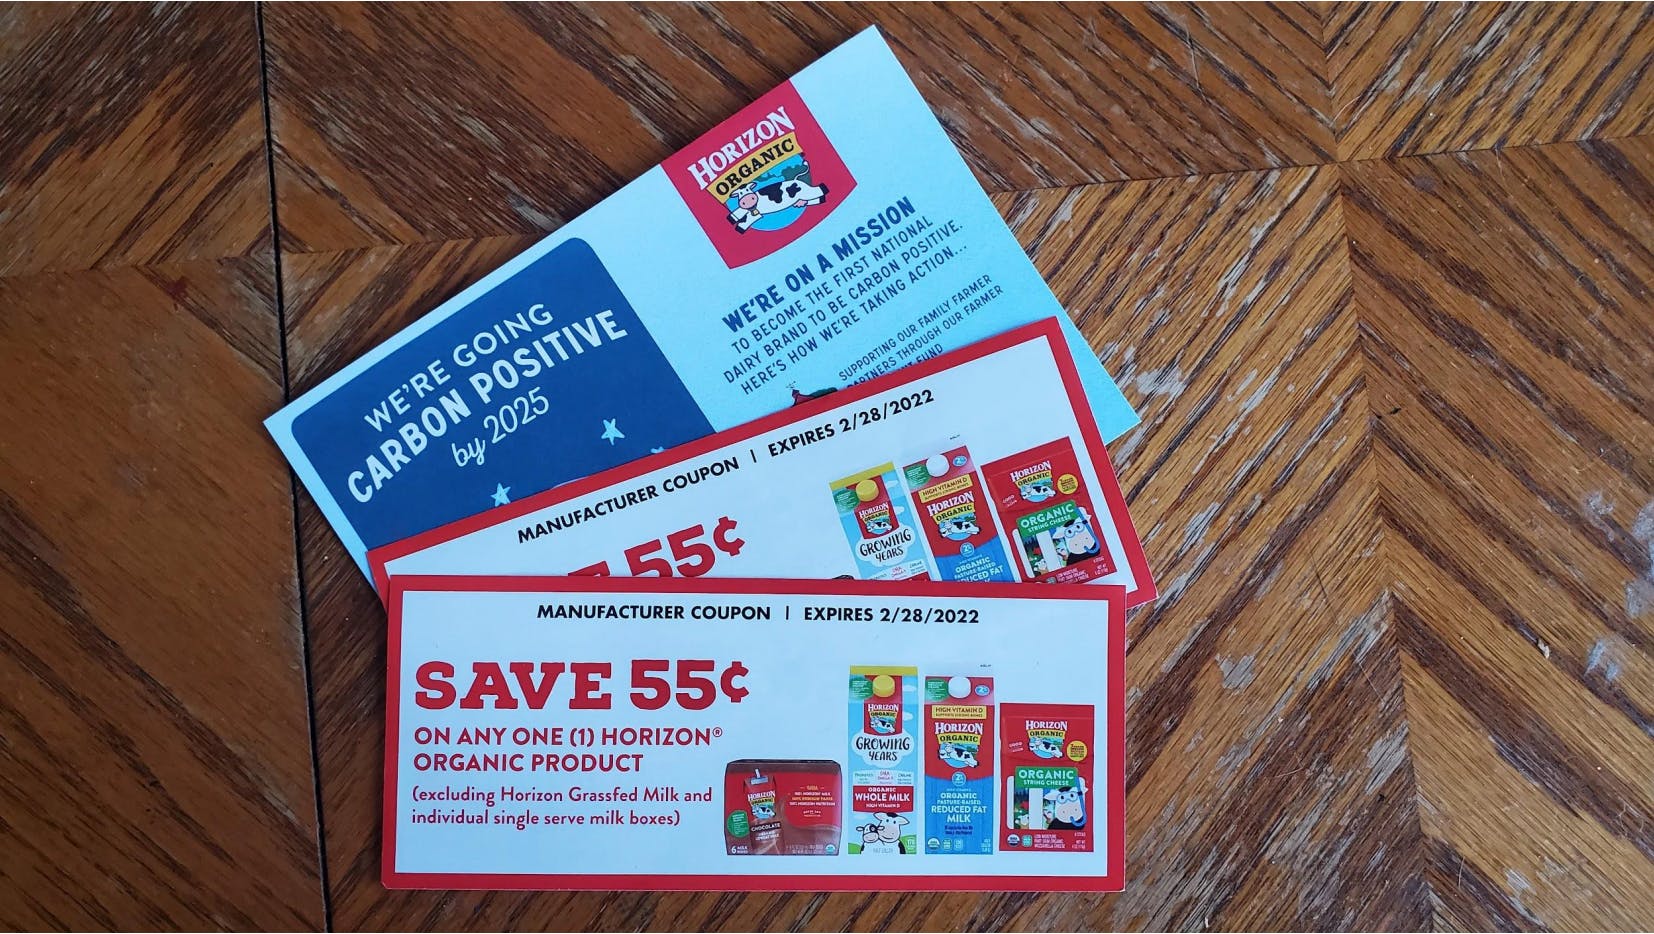 Horizon Organic free milk coupons